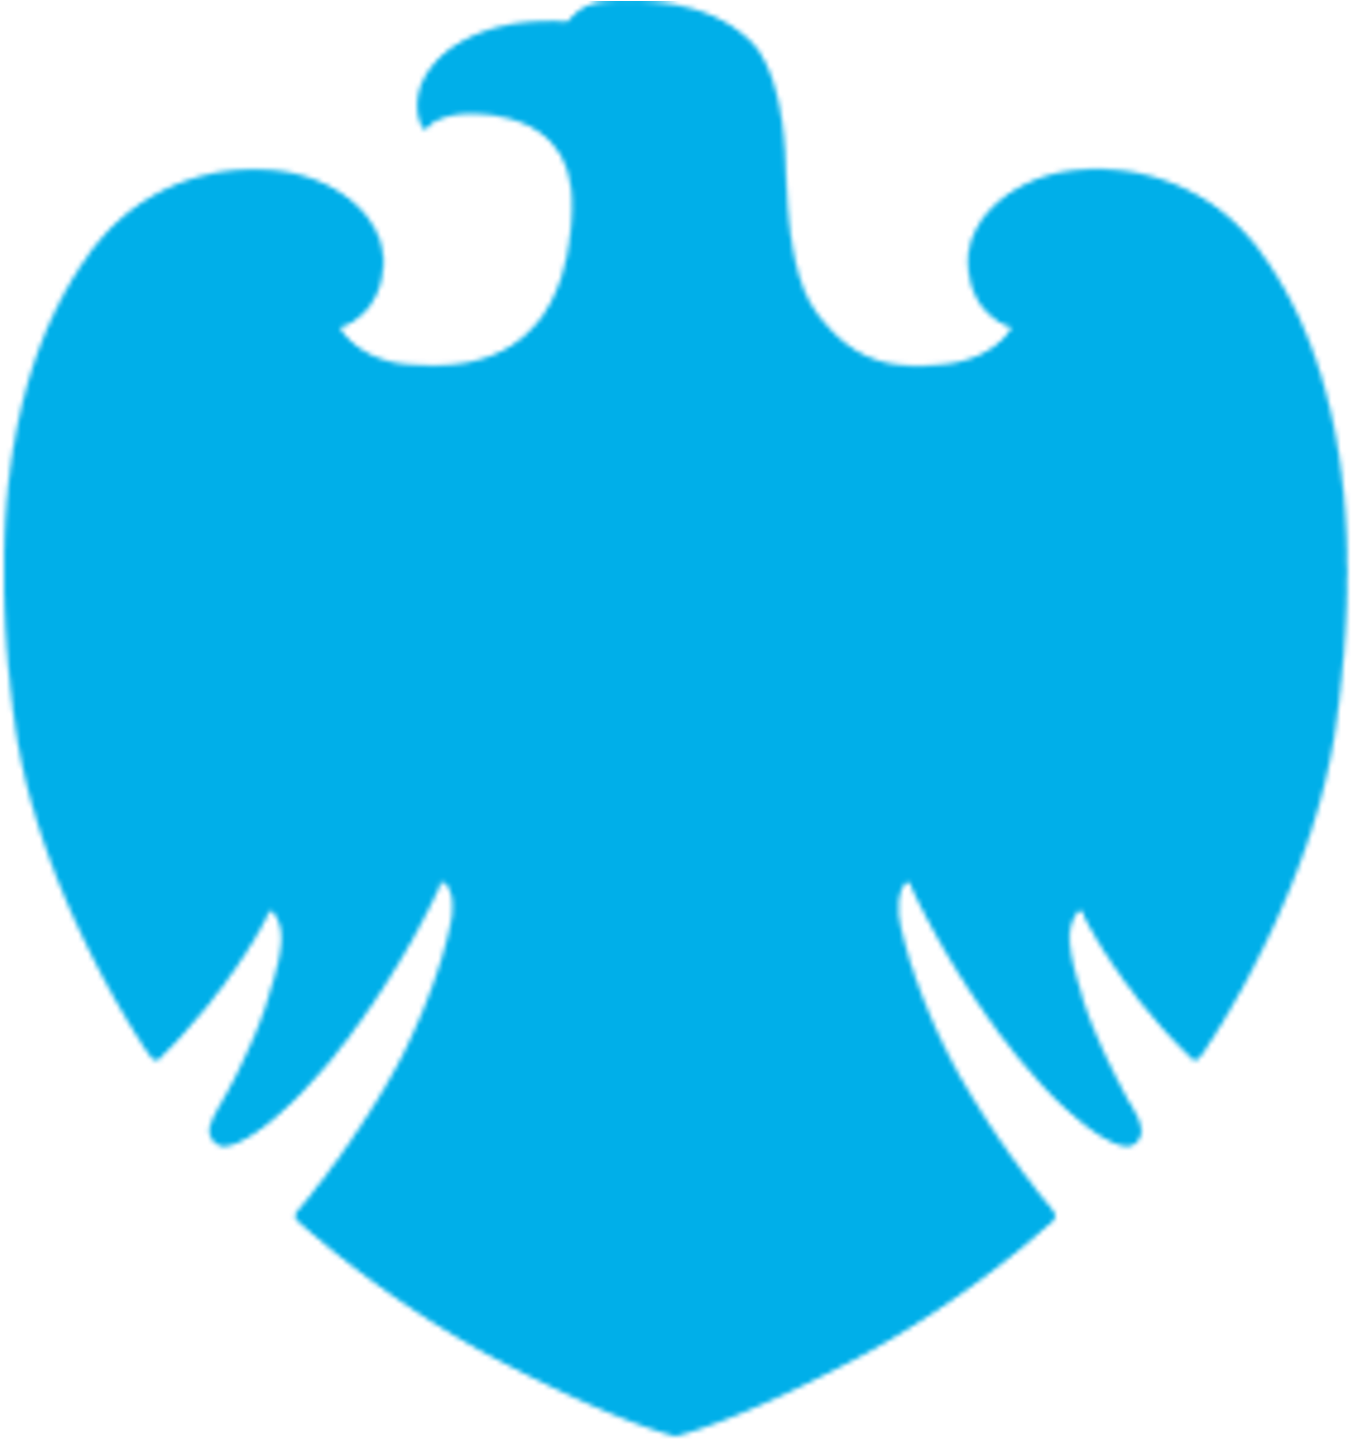 Barclays Logo Png Transparent